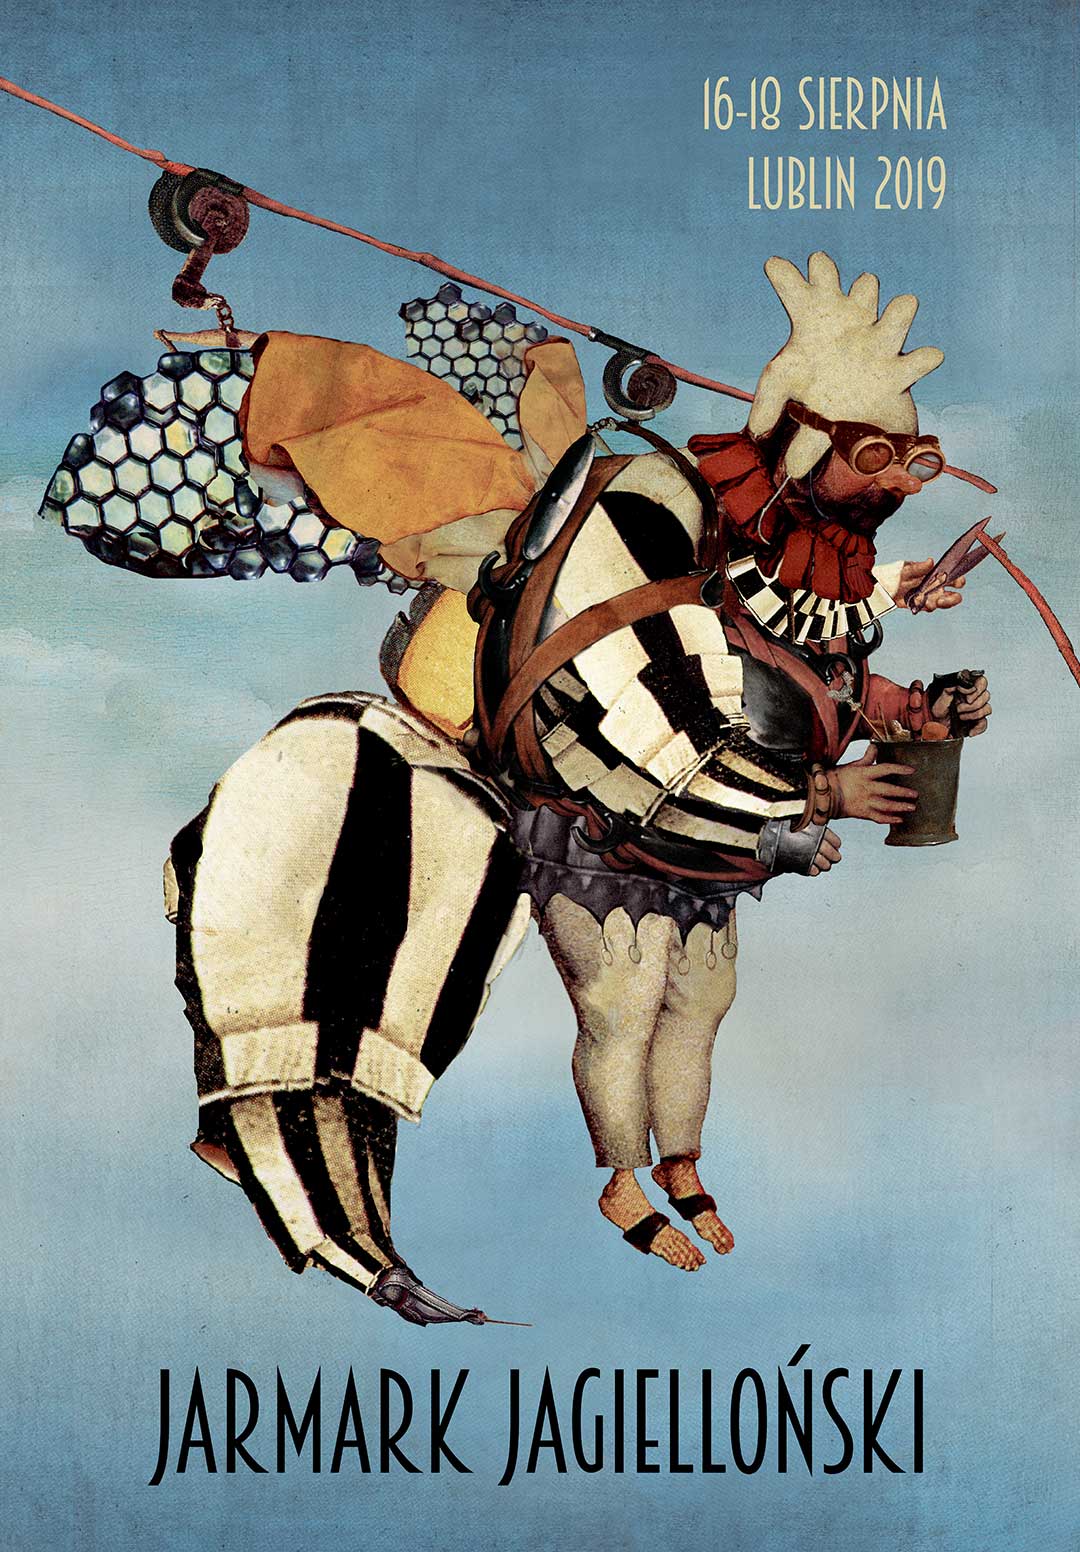 [Plakat Jarmarku Jagiellońskiego, niebieskie tło, kolaż wykonany w stylistyce retro, grafika przedstawia kuro-pszczołę]